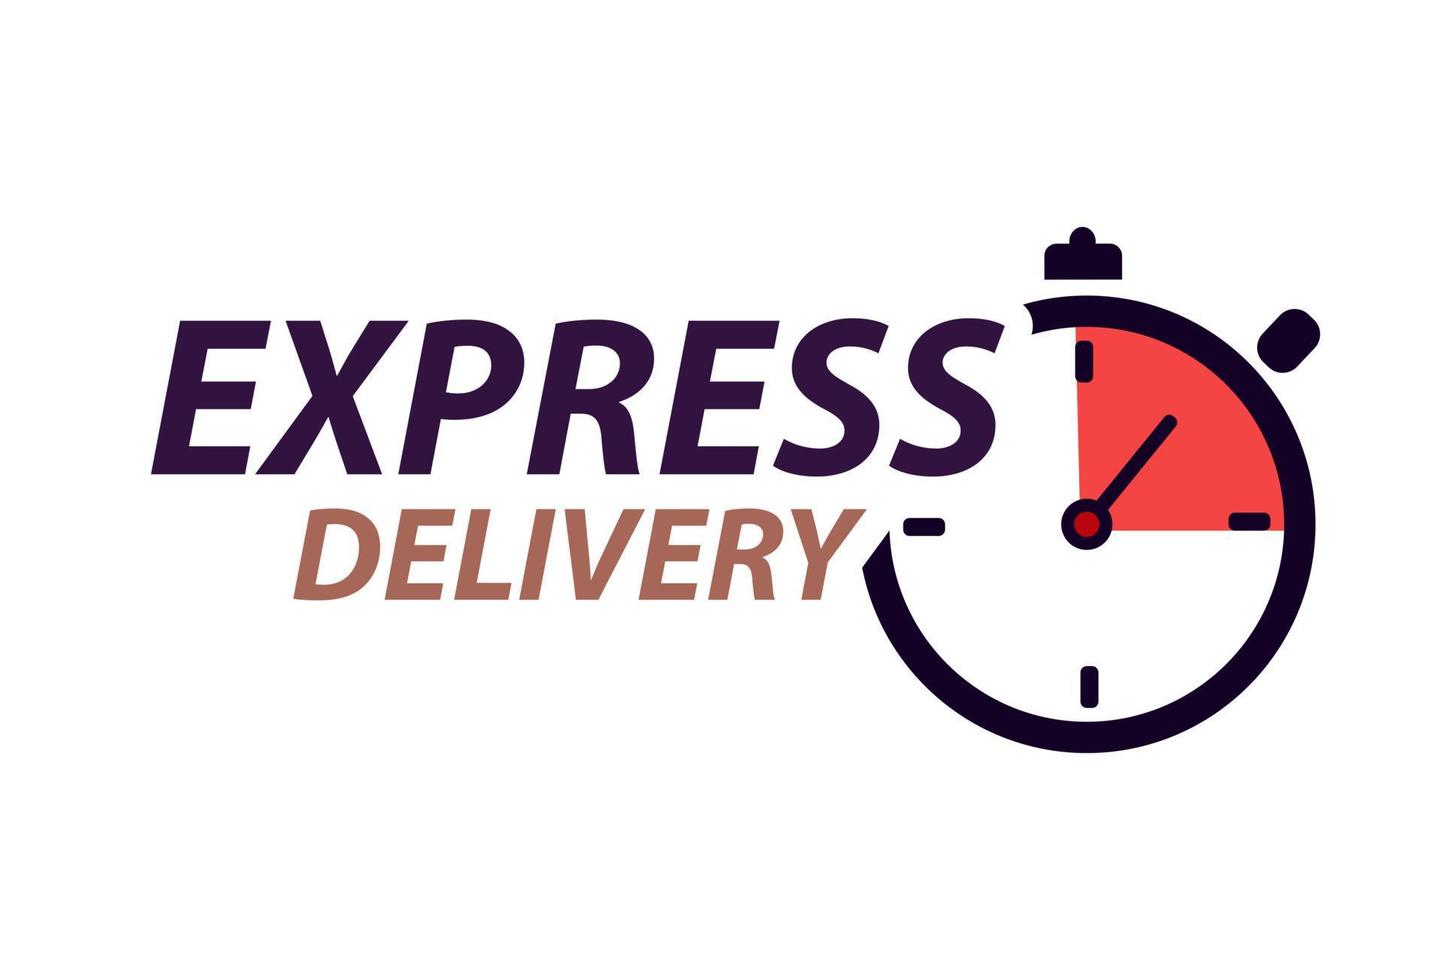 Logo Du Service De Livraison Express Commande De Livraison Rapide Avec  Chronomètre Icône De Livraison Rapide